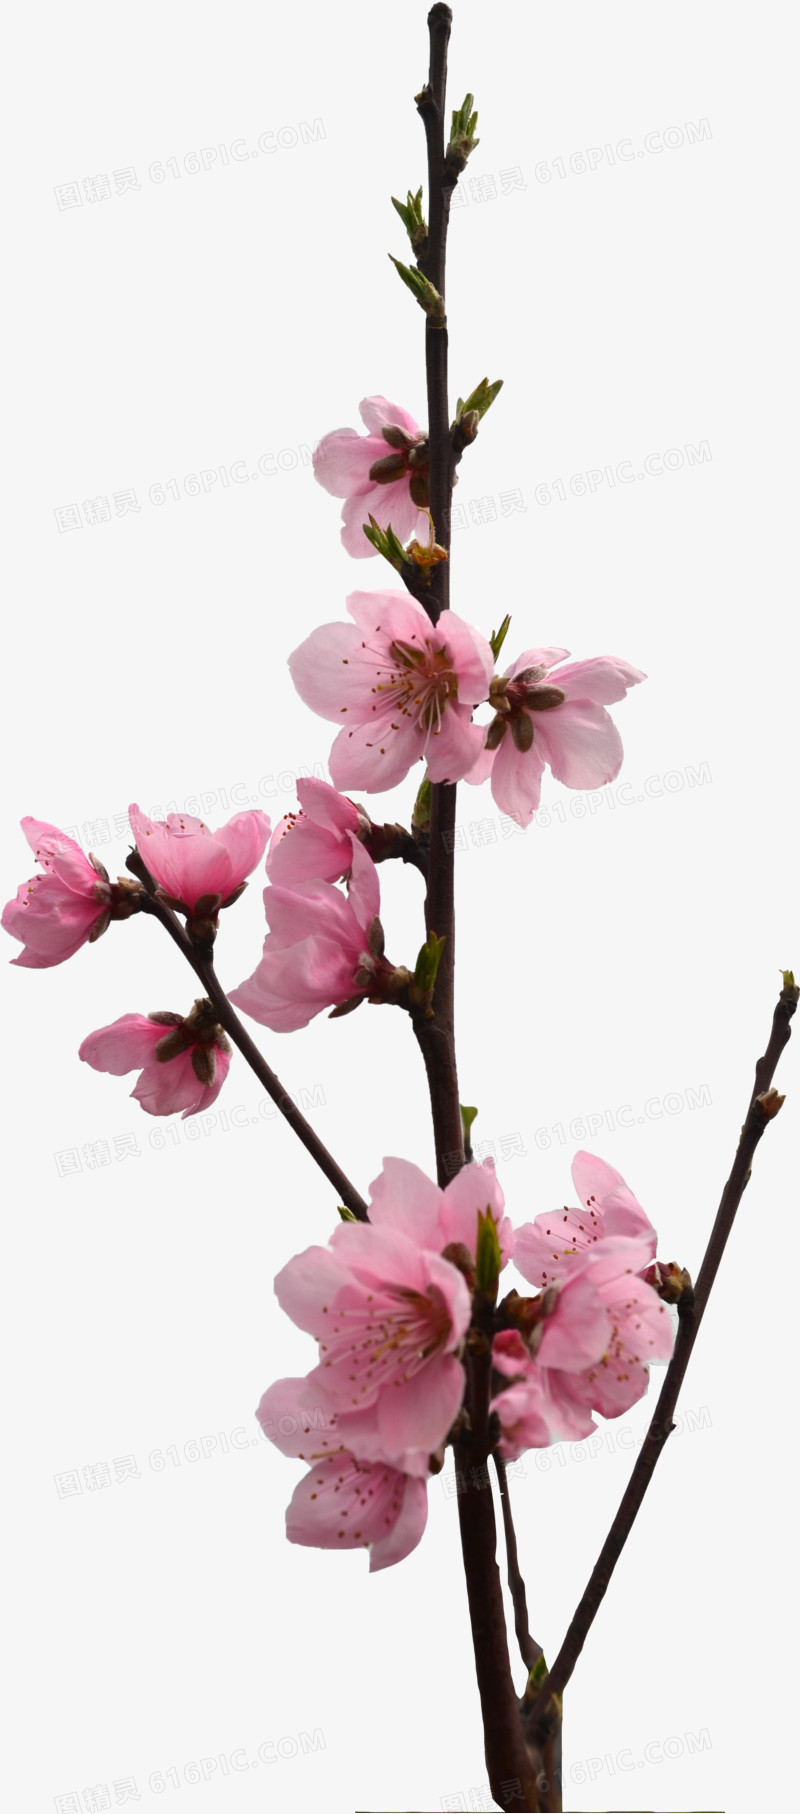 清新粉色桃花树枝装饰